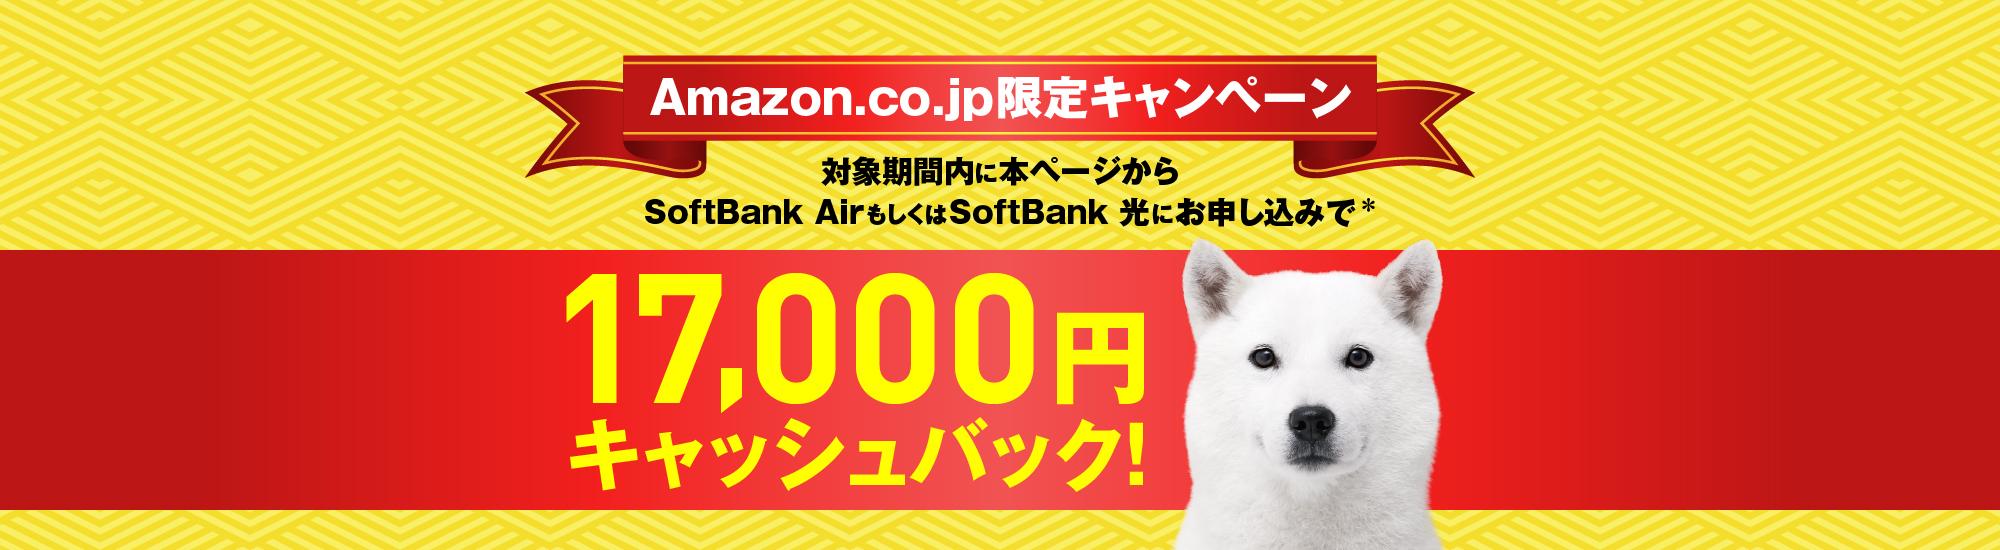 Amazon.co.jp限定キャンペーン 本ページからSoftBank AirもしくはSoftBank 光にお申し込みで* Amazonギフト券 17,000円分プレゼント！